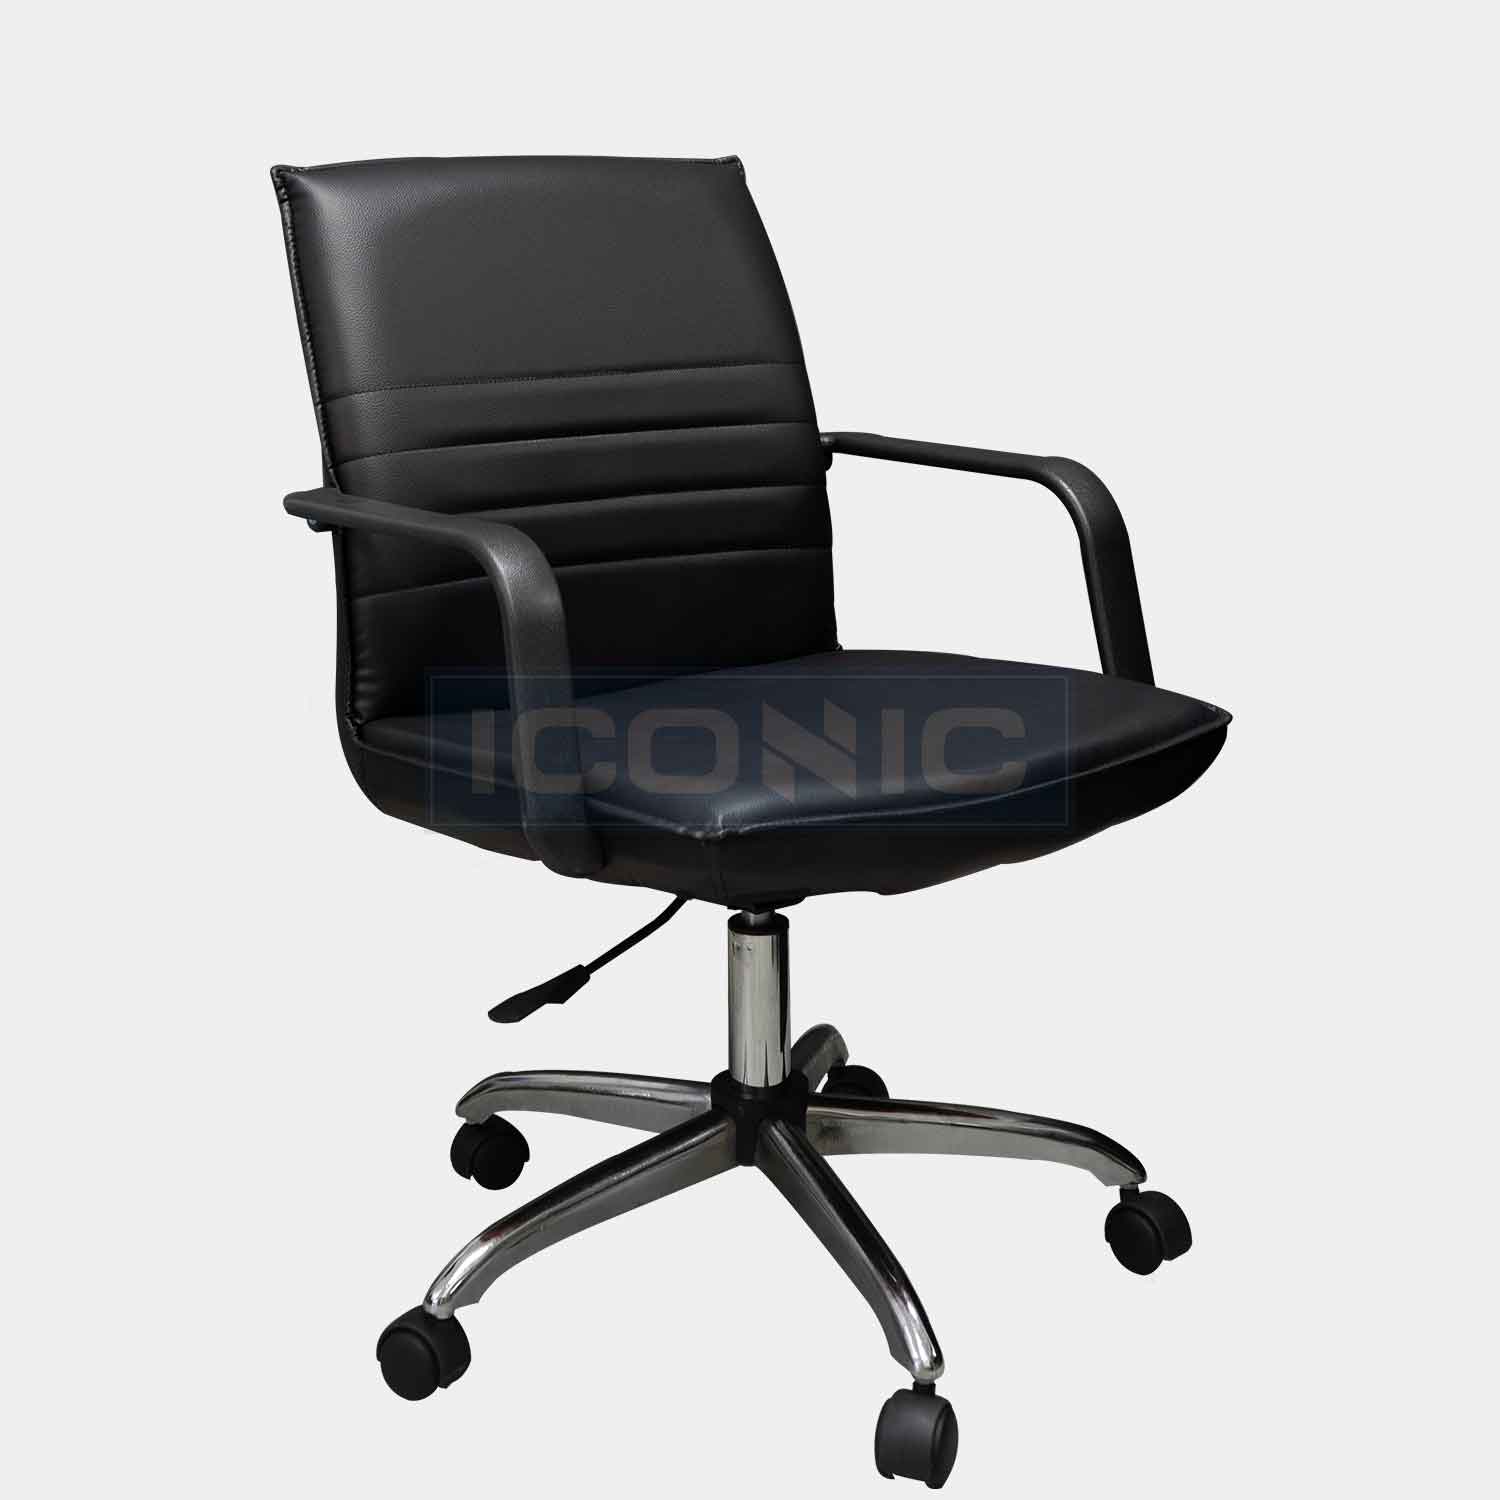 เก้าอี้ทำงาน ราคาถูก Mh-004A | ไซซ์มินิมอล ในราคาเพียง 1,480.-